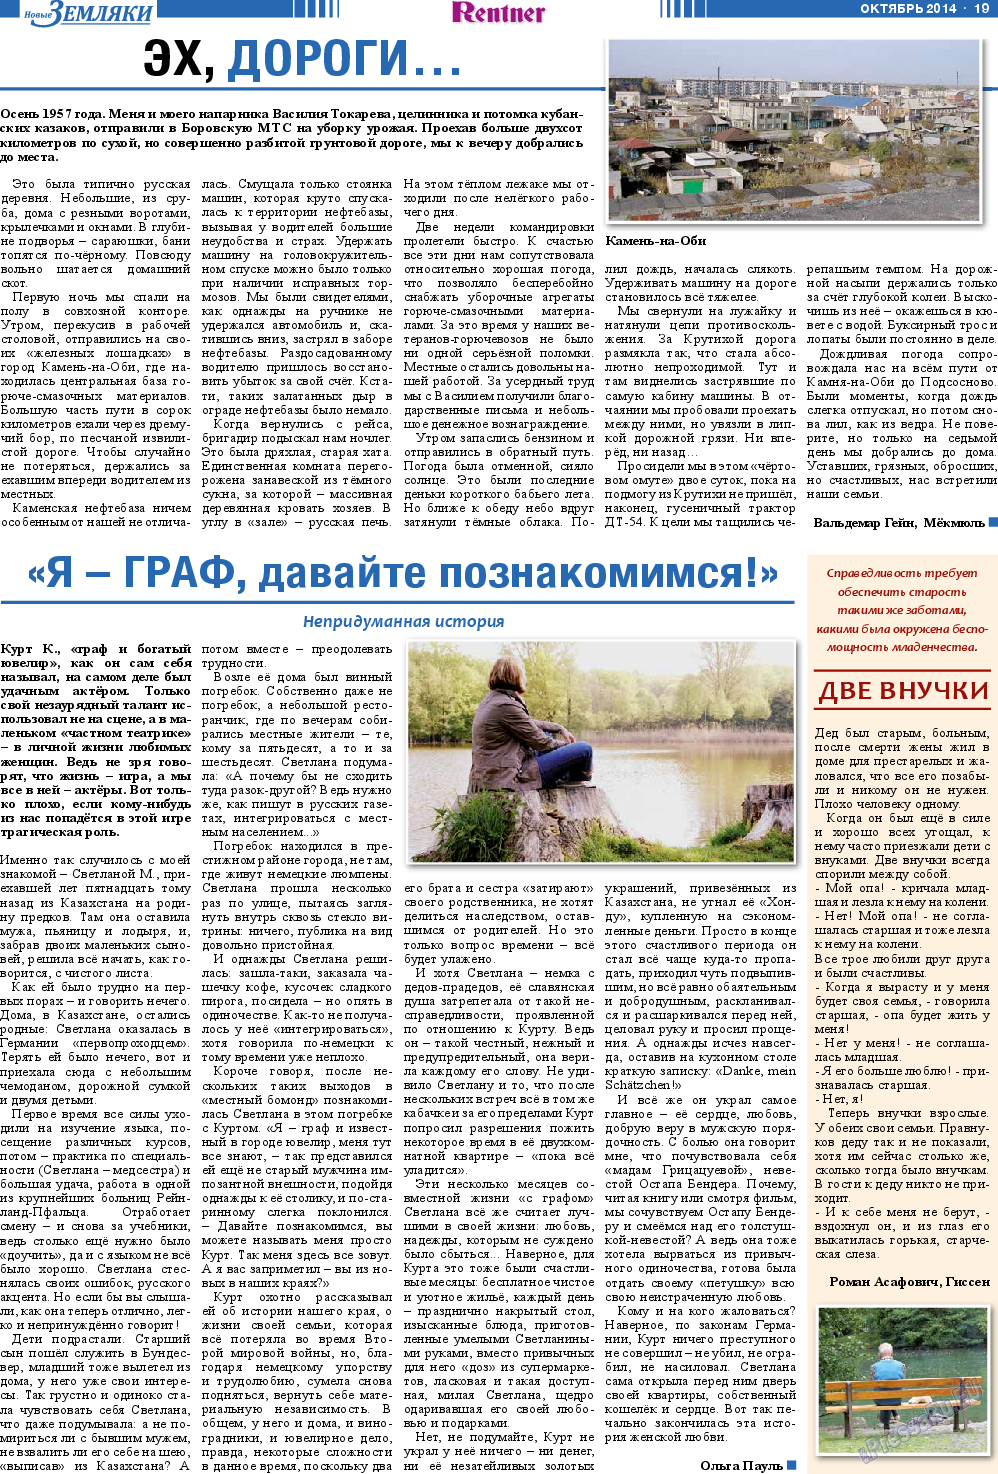 Новые Земляки, газета. 2014 №10 стр.19